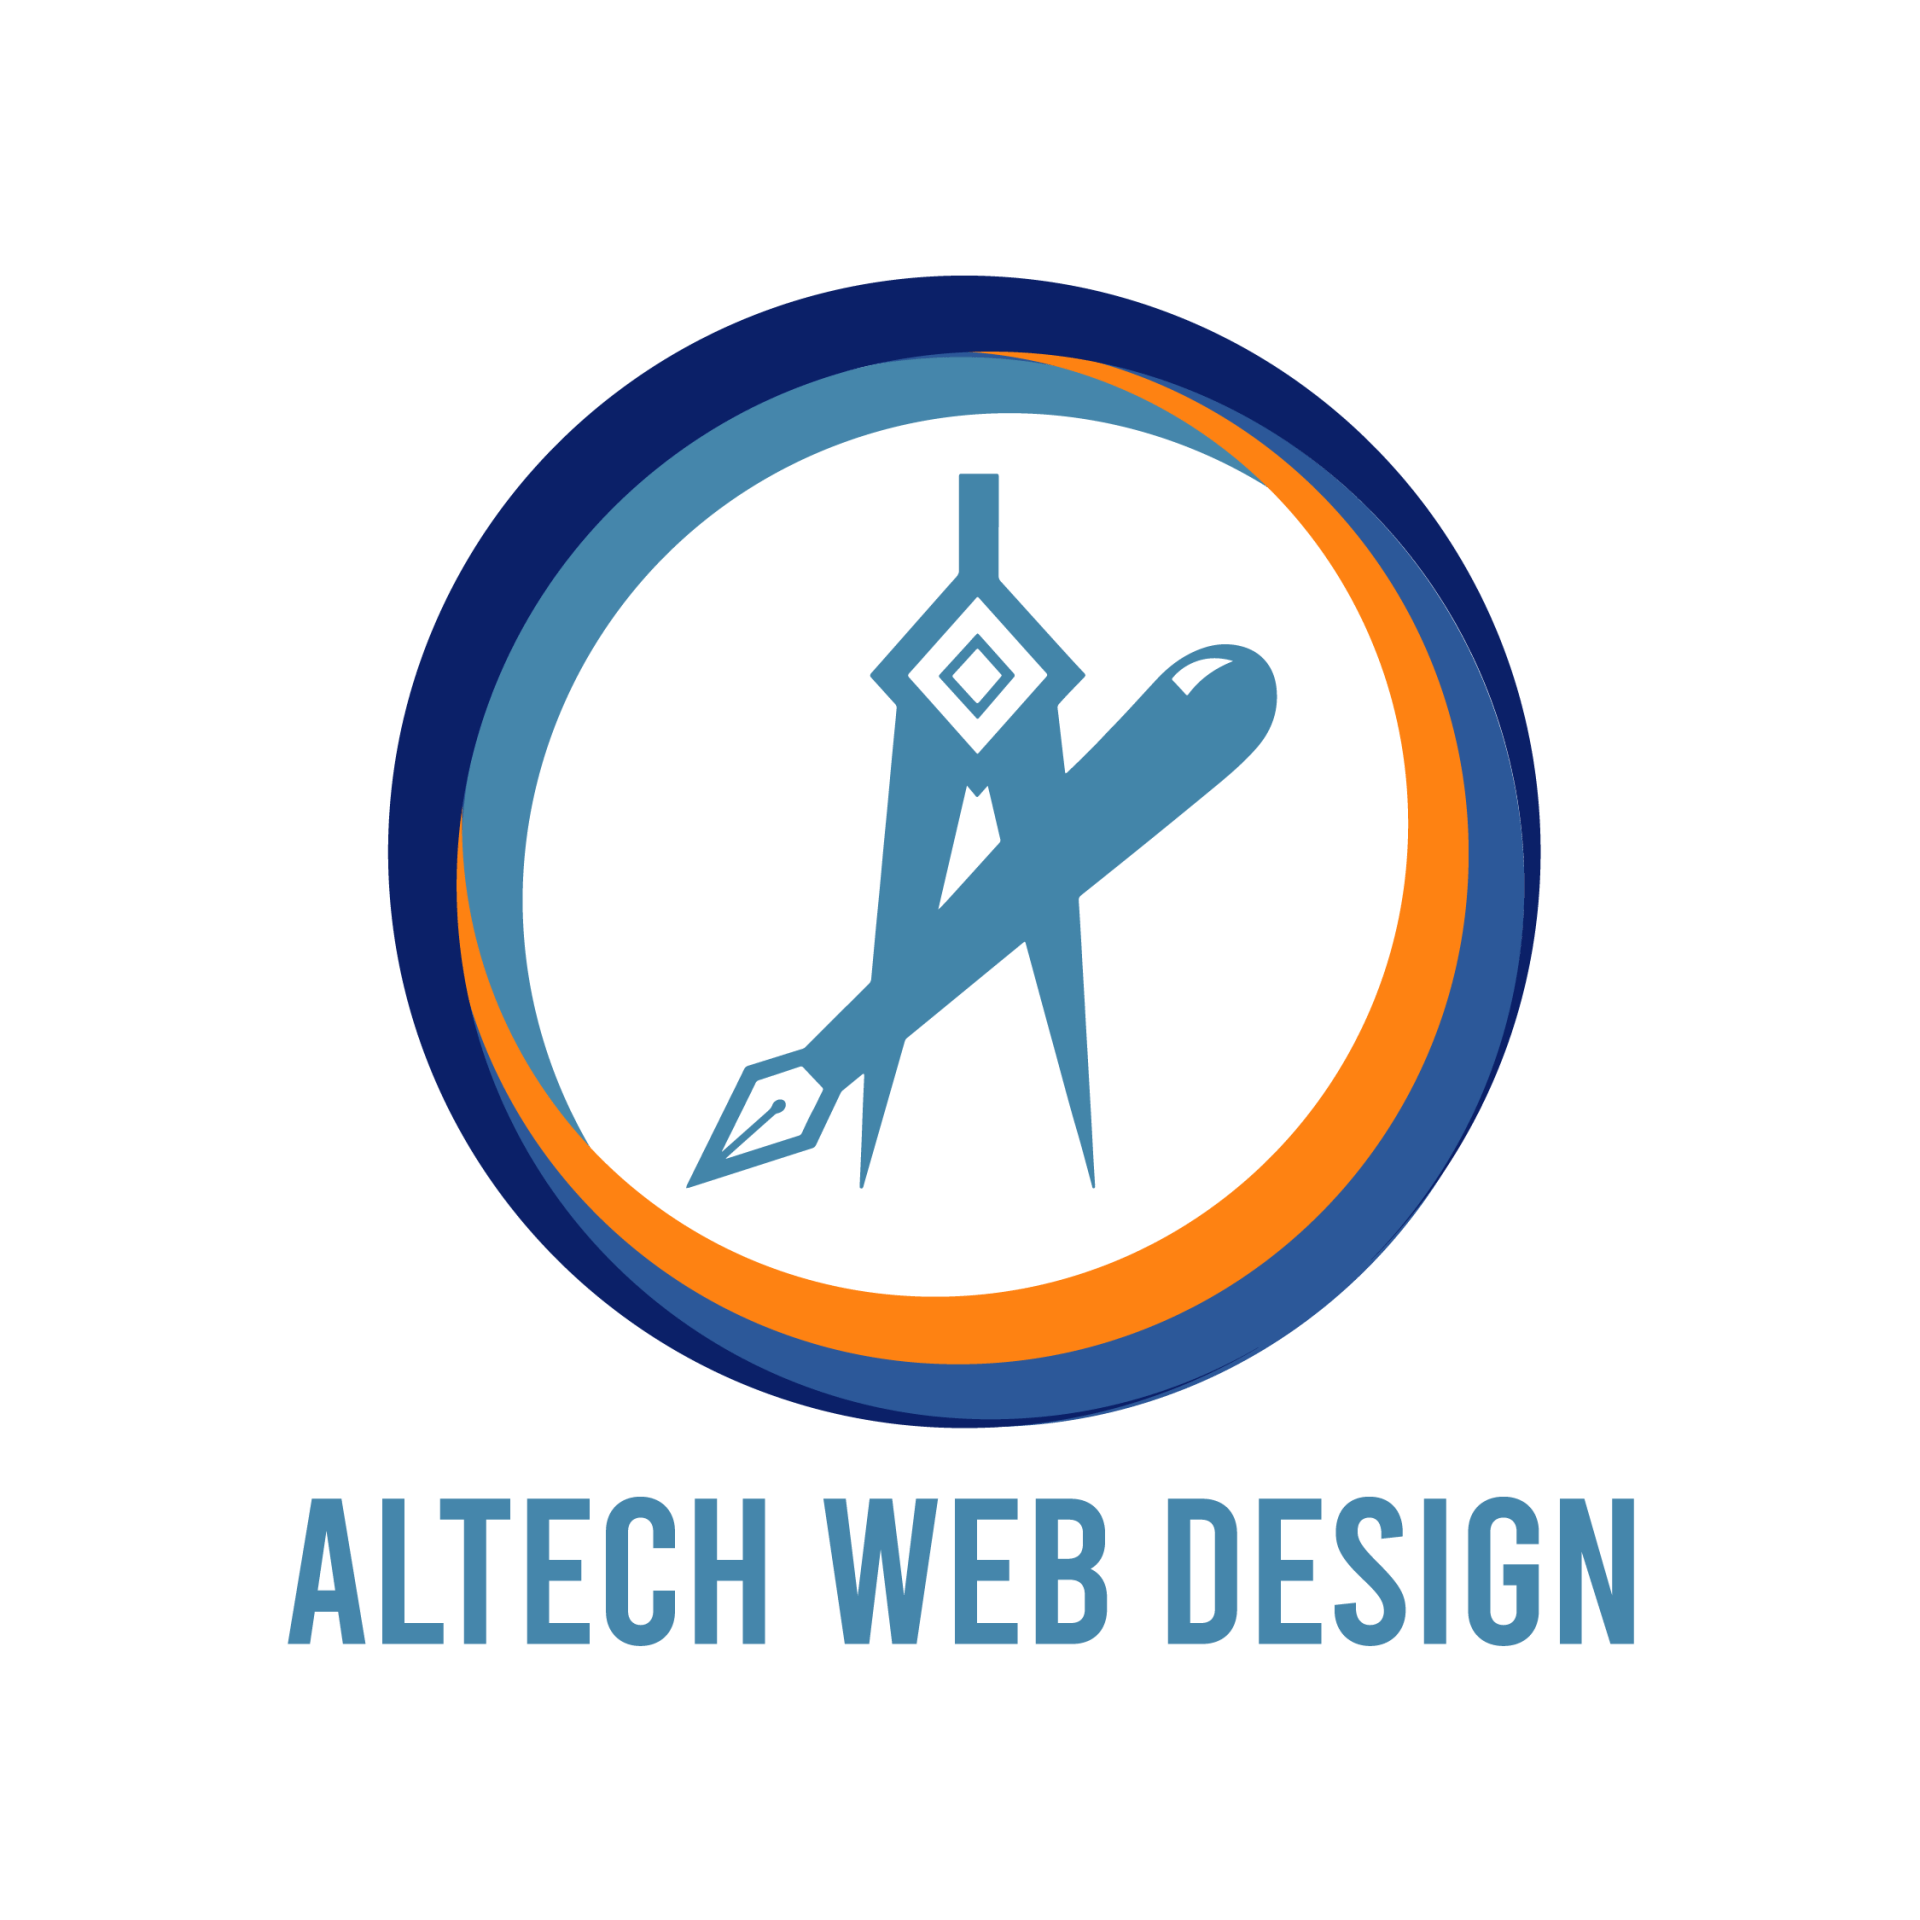 (c) Altechwebdesign.com